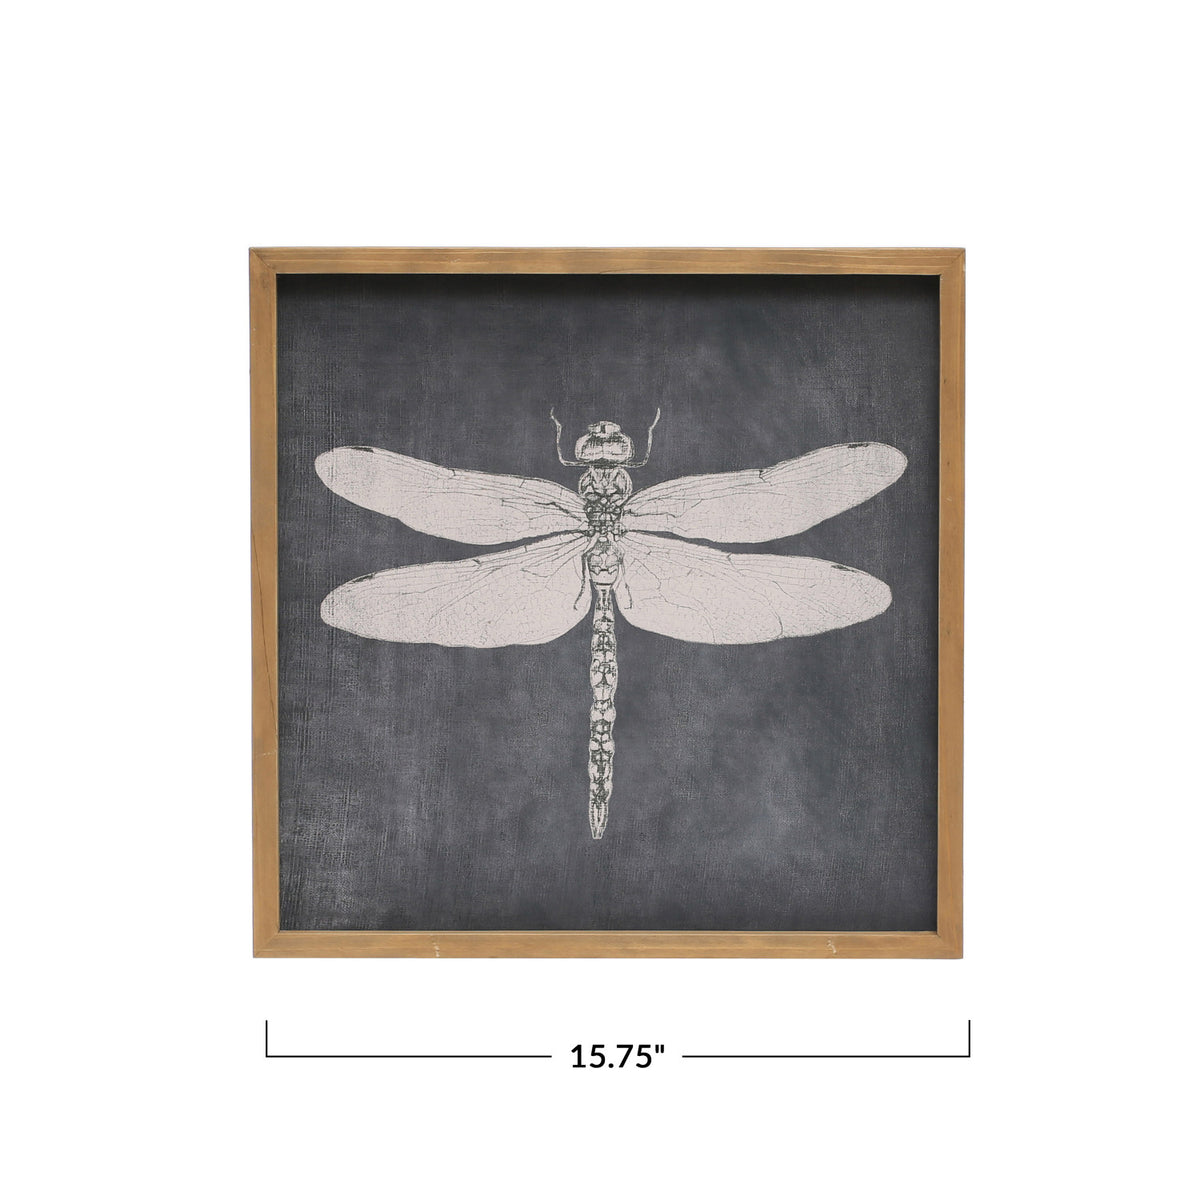 15.75"S Wood Framed Wall Decor w/Dragonfly